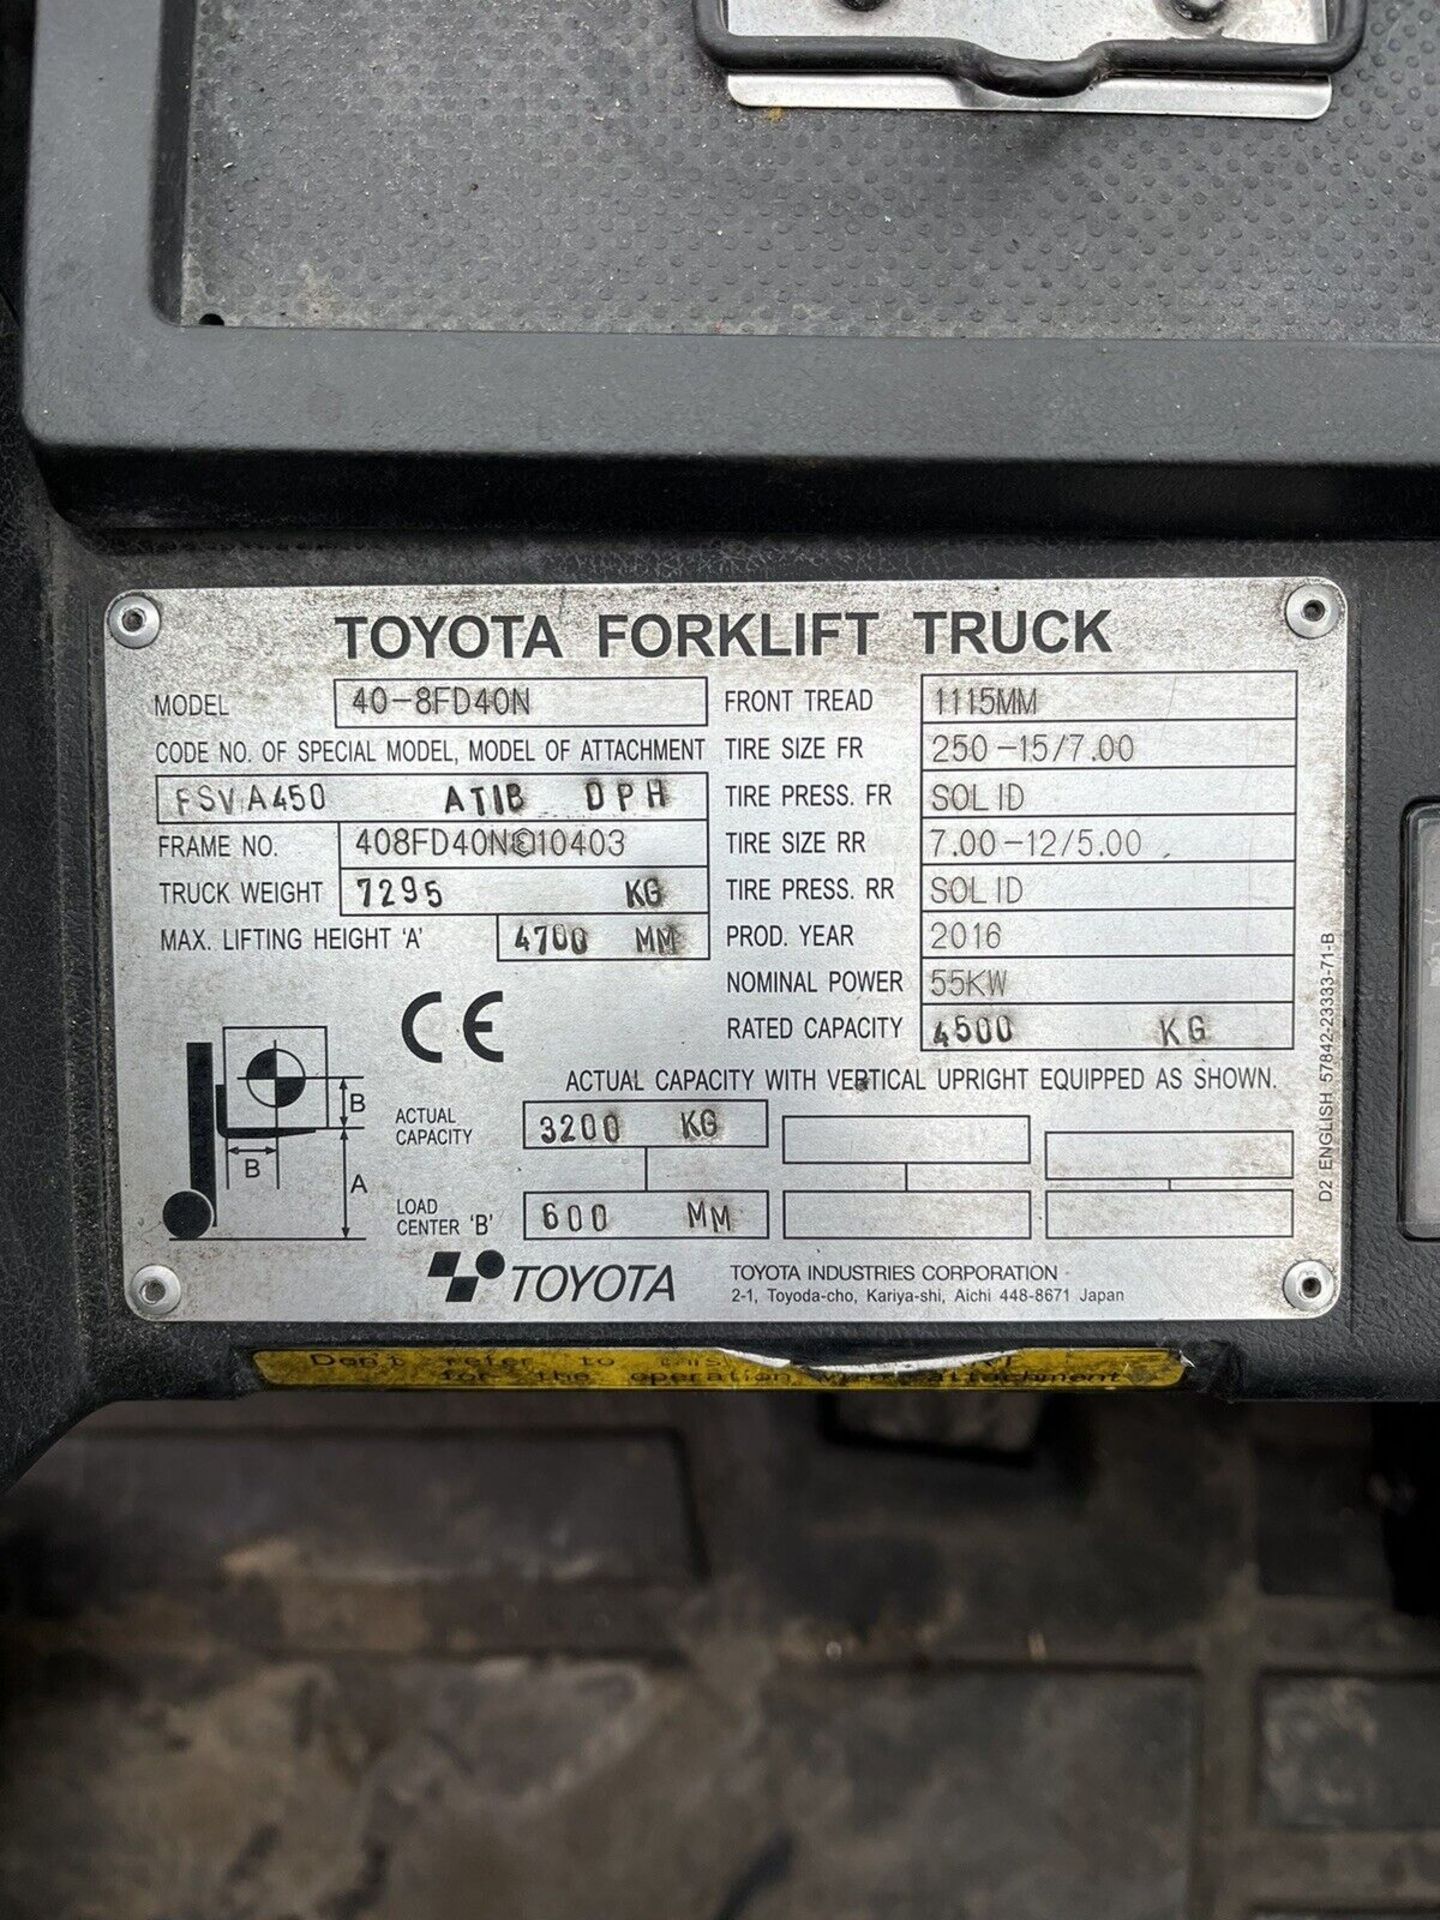 2016 Toyota 40-8FD40N 4 Tonne Diesel Forklift, 4.5 Tonne at 500 Load Center - Image 5 of 8